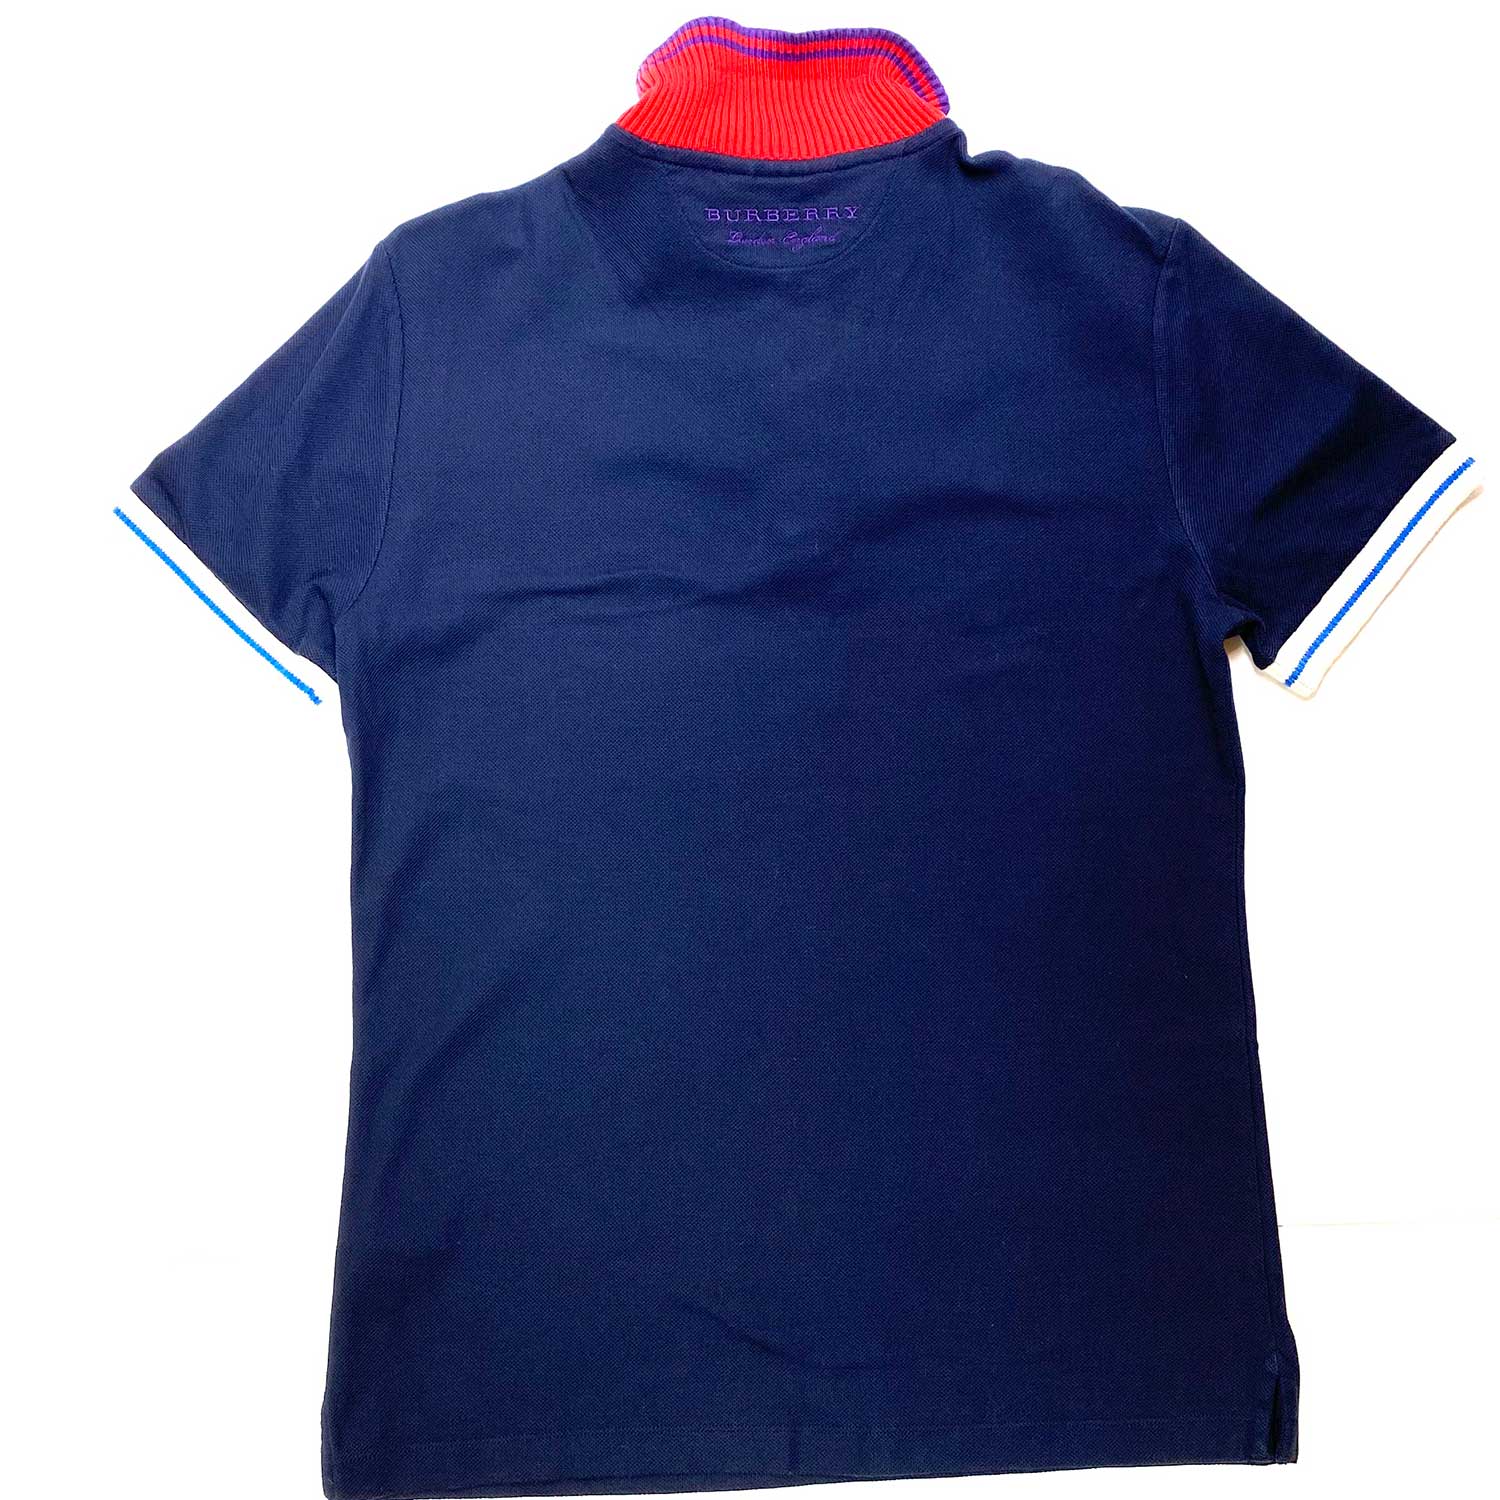 Camisa Polo Burberry Azul e Vermelha